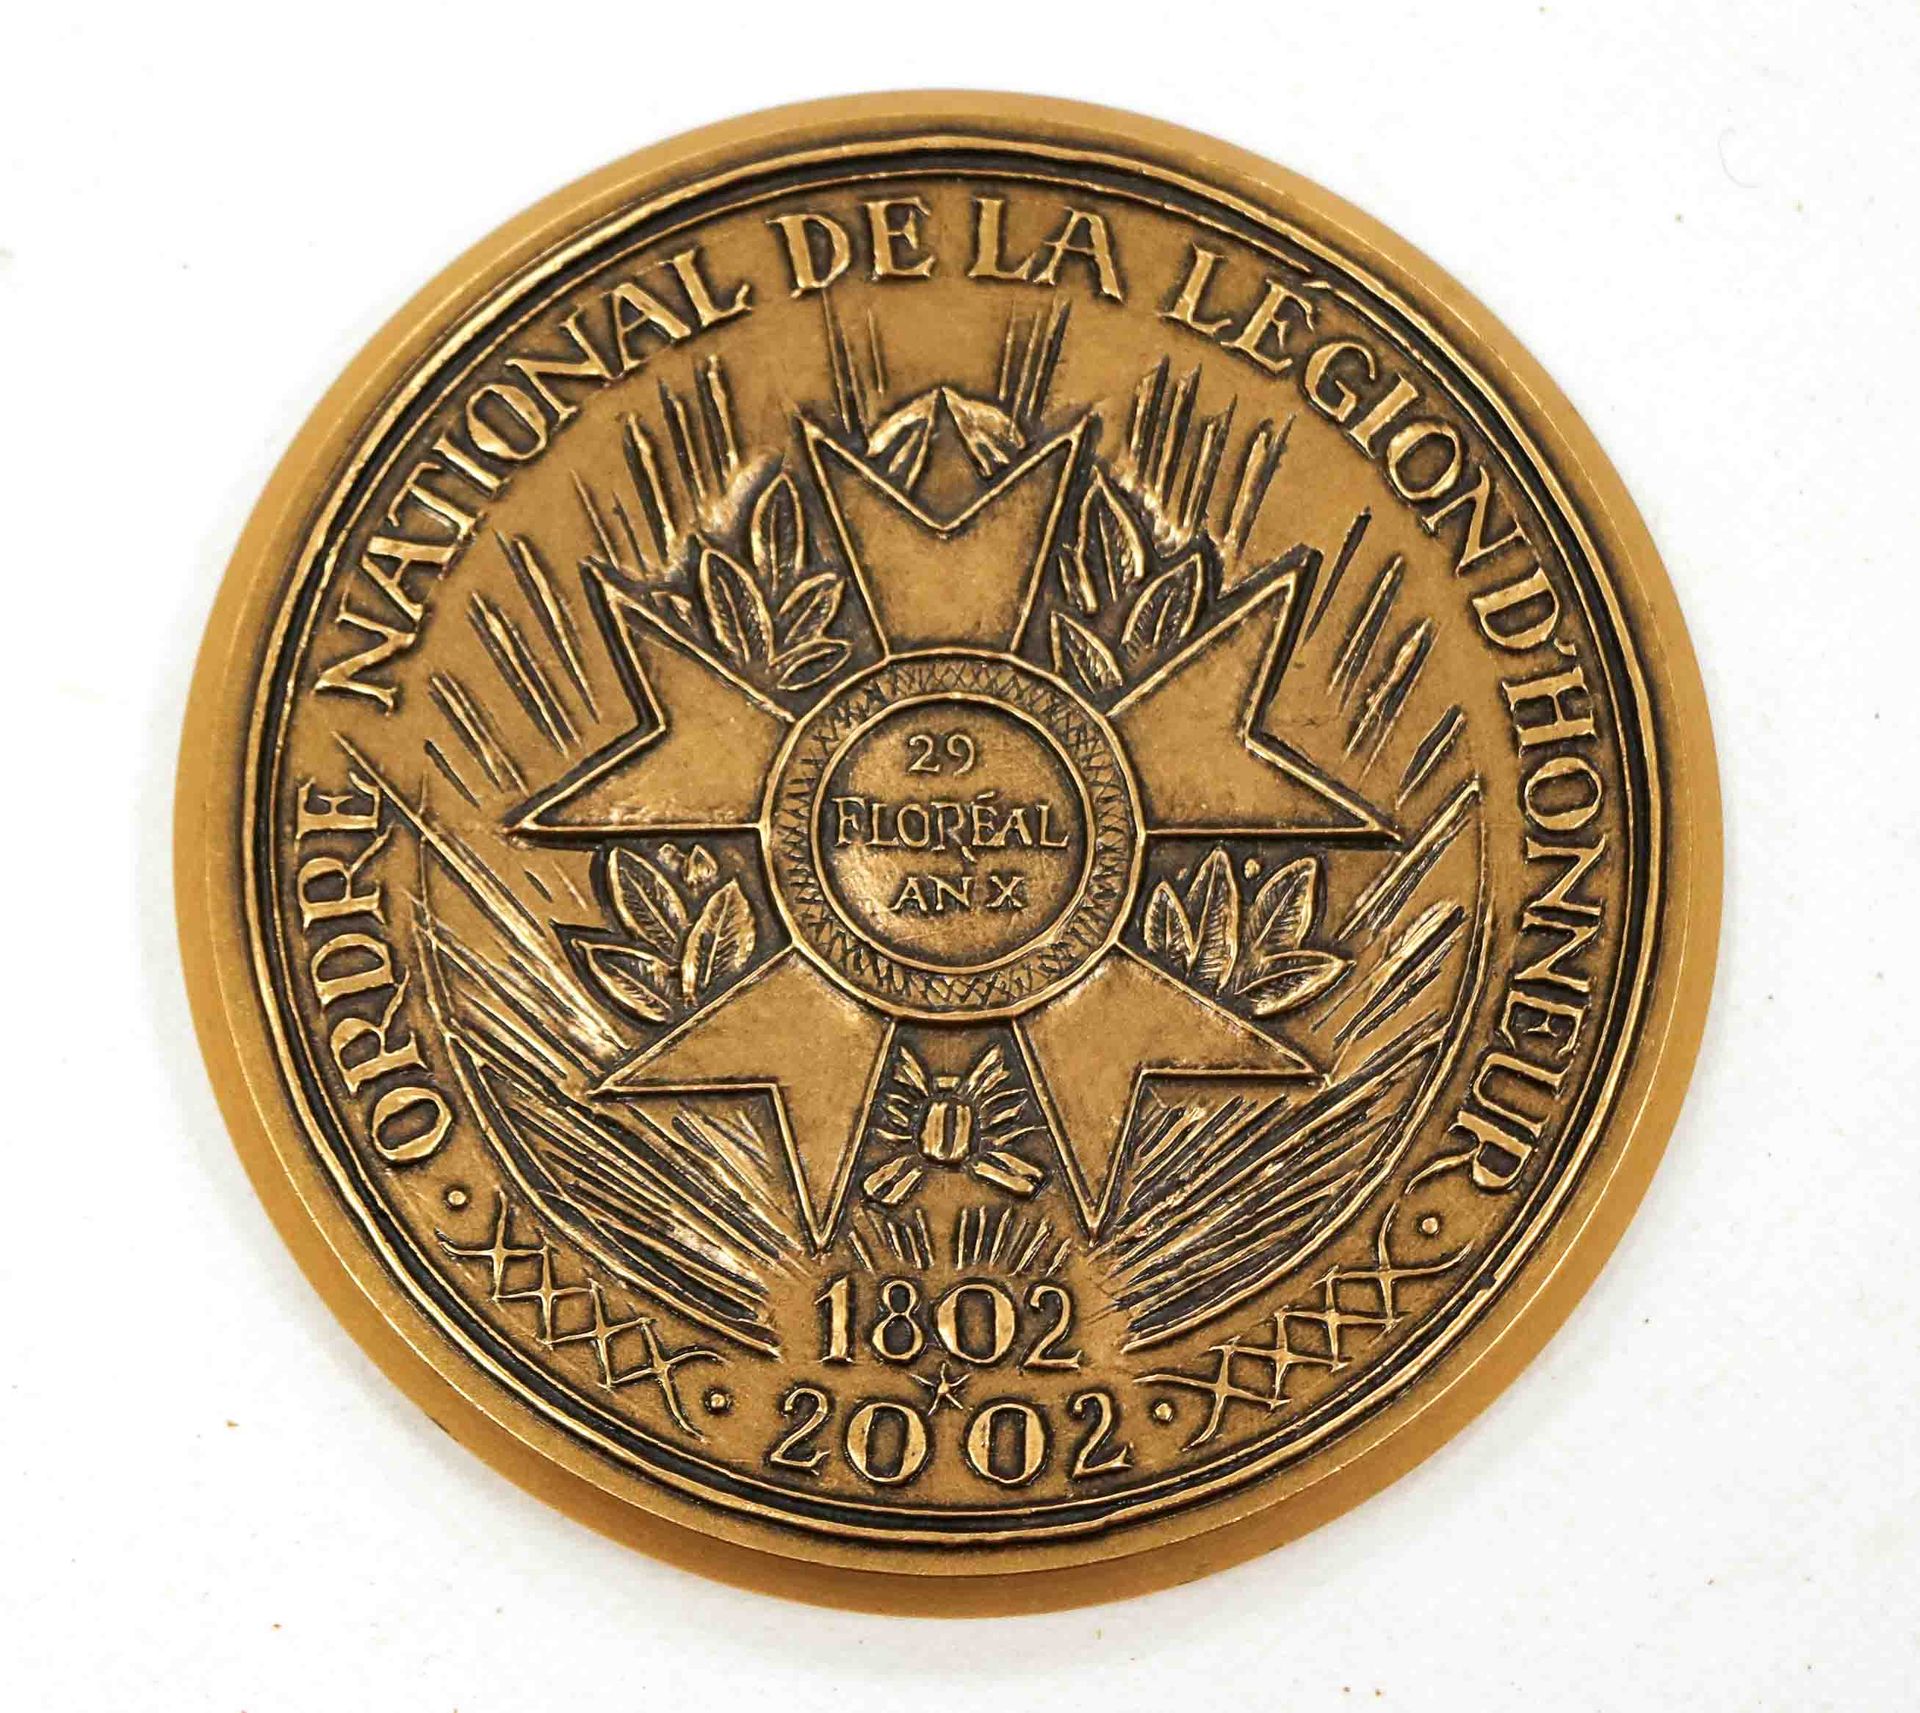 Null Ordine Nazionale della Legione d'Onore 1802-2002

Medaglia di bronzo rotond&hellip;